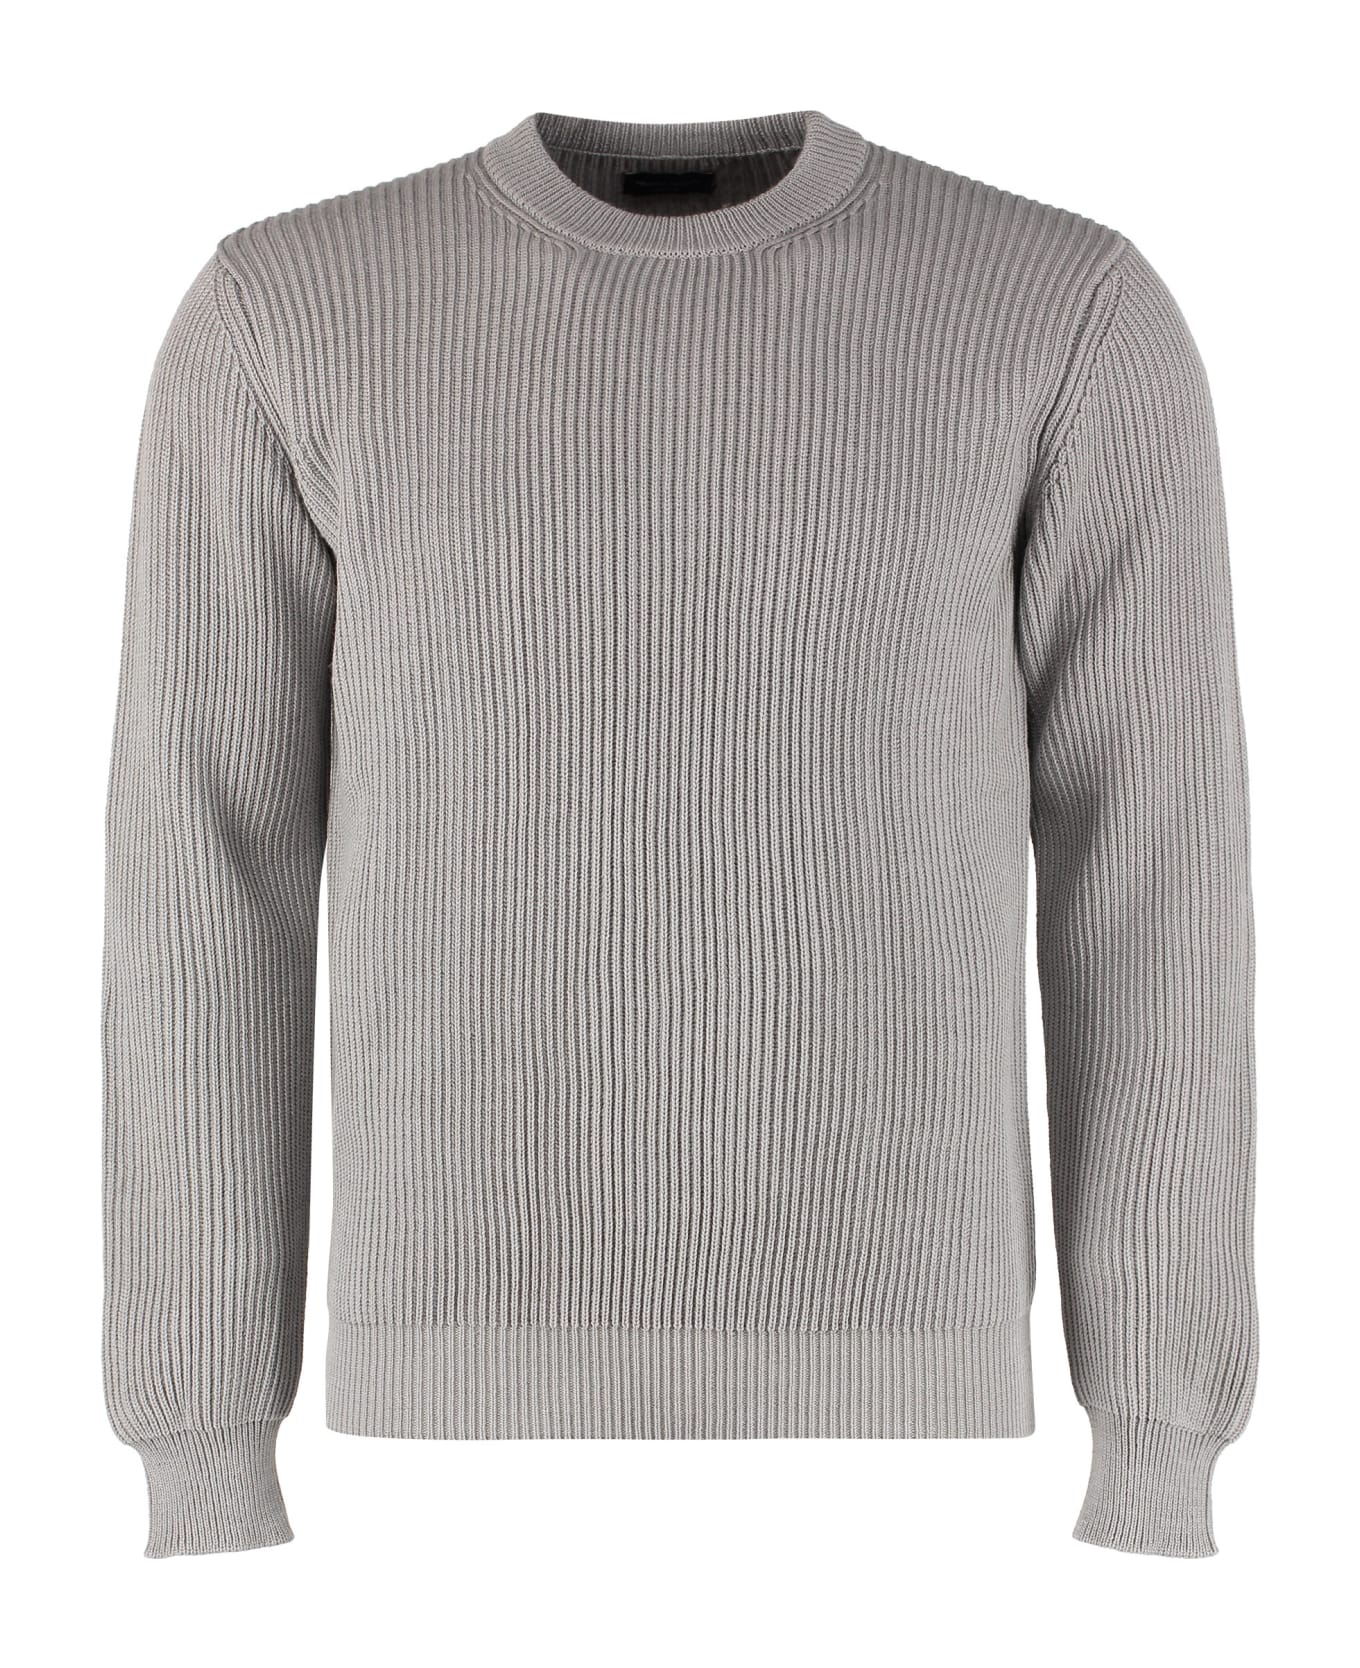 Roberto Collina Wool Sweater - grey